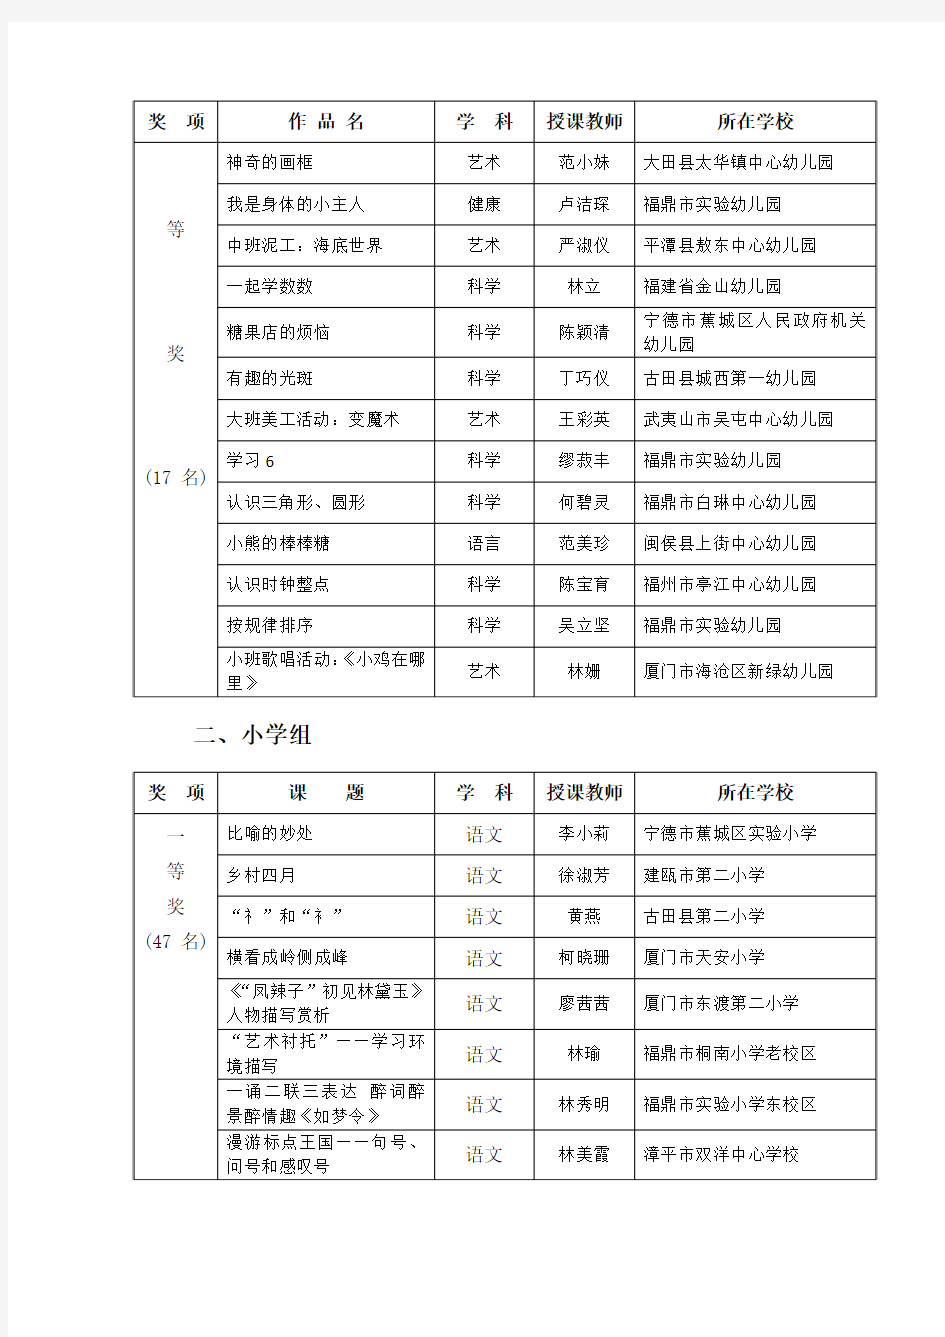 第二届福建省“微课堂”网络评选活动获奖名单